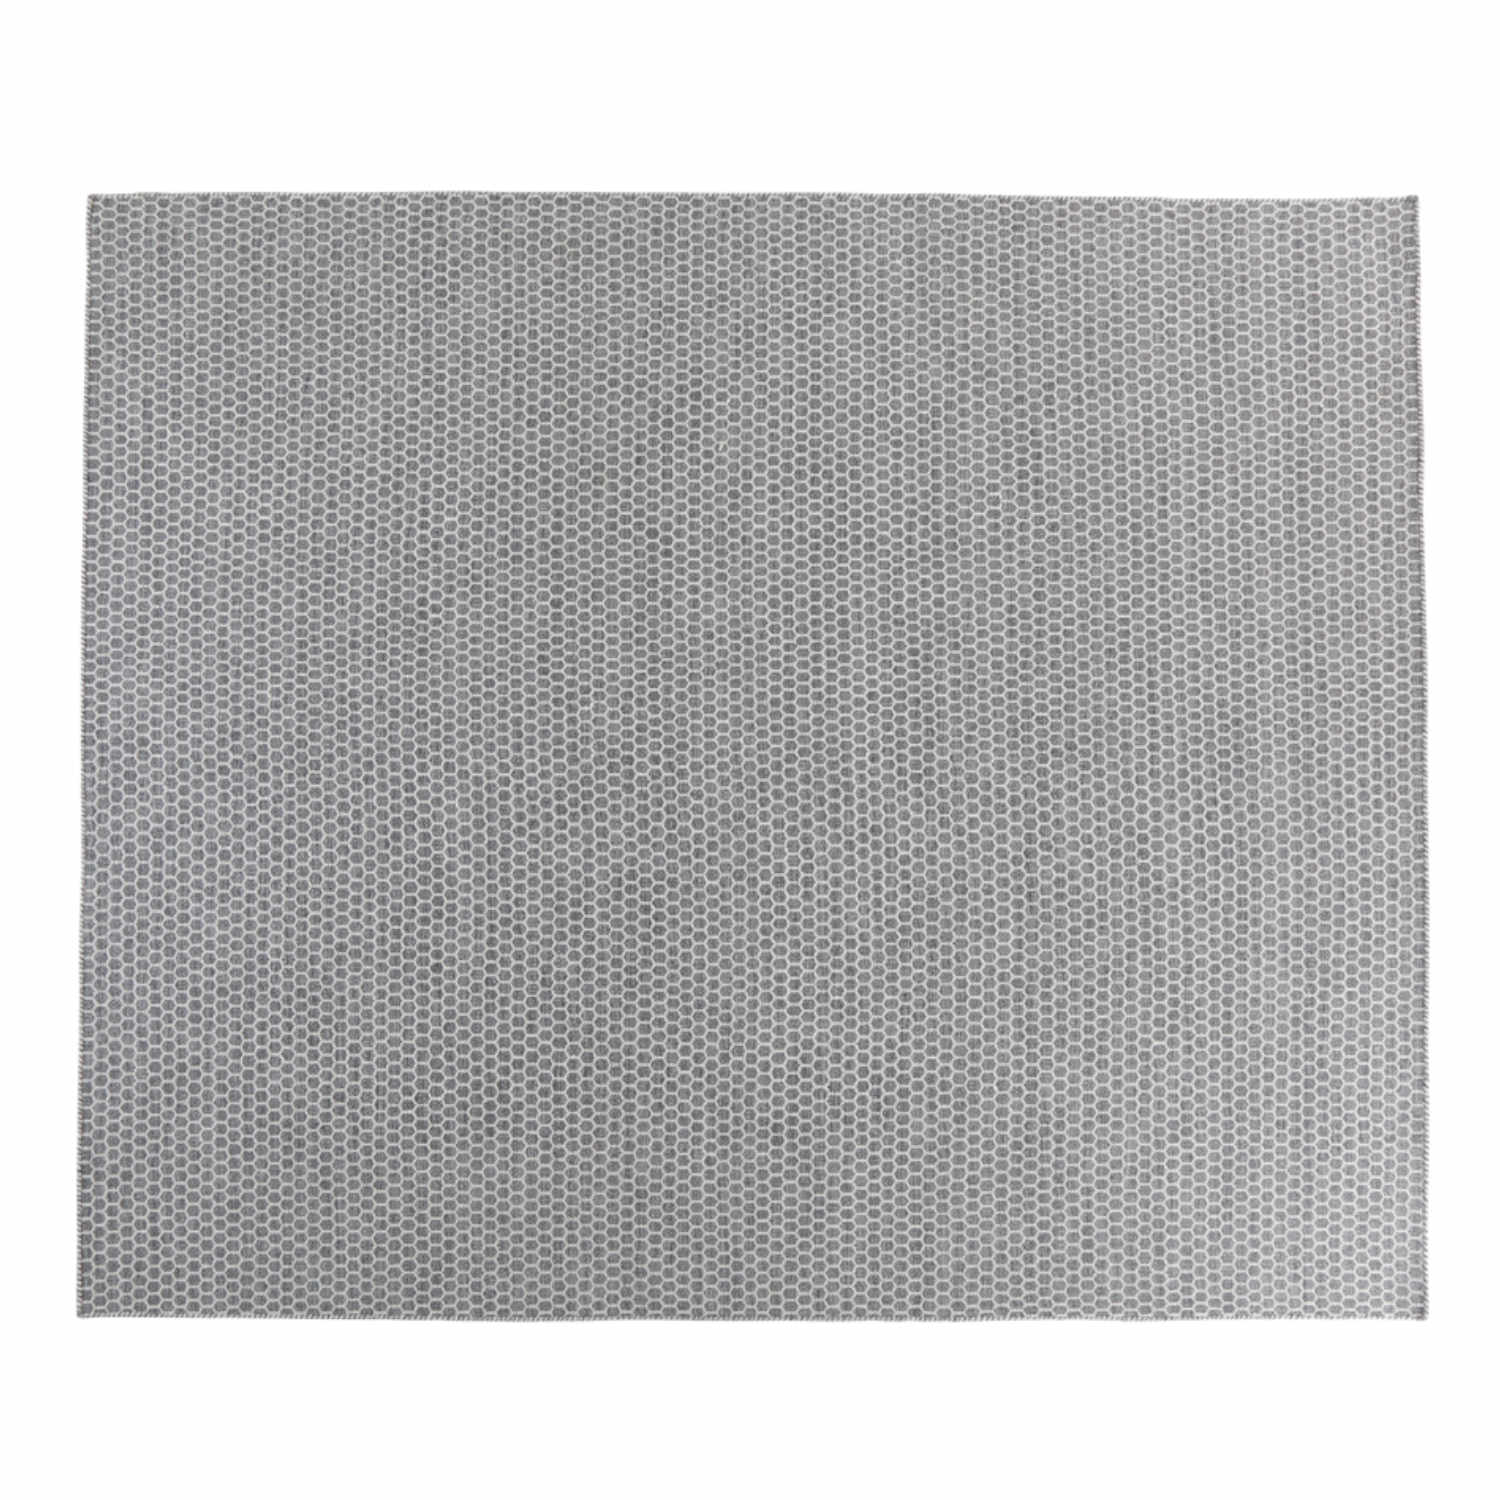 VanGard Vol. I Teppich, Grösse 300 x 400 cm, Farbe sharkskin von miinu